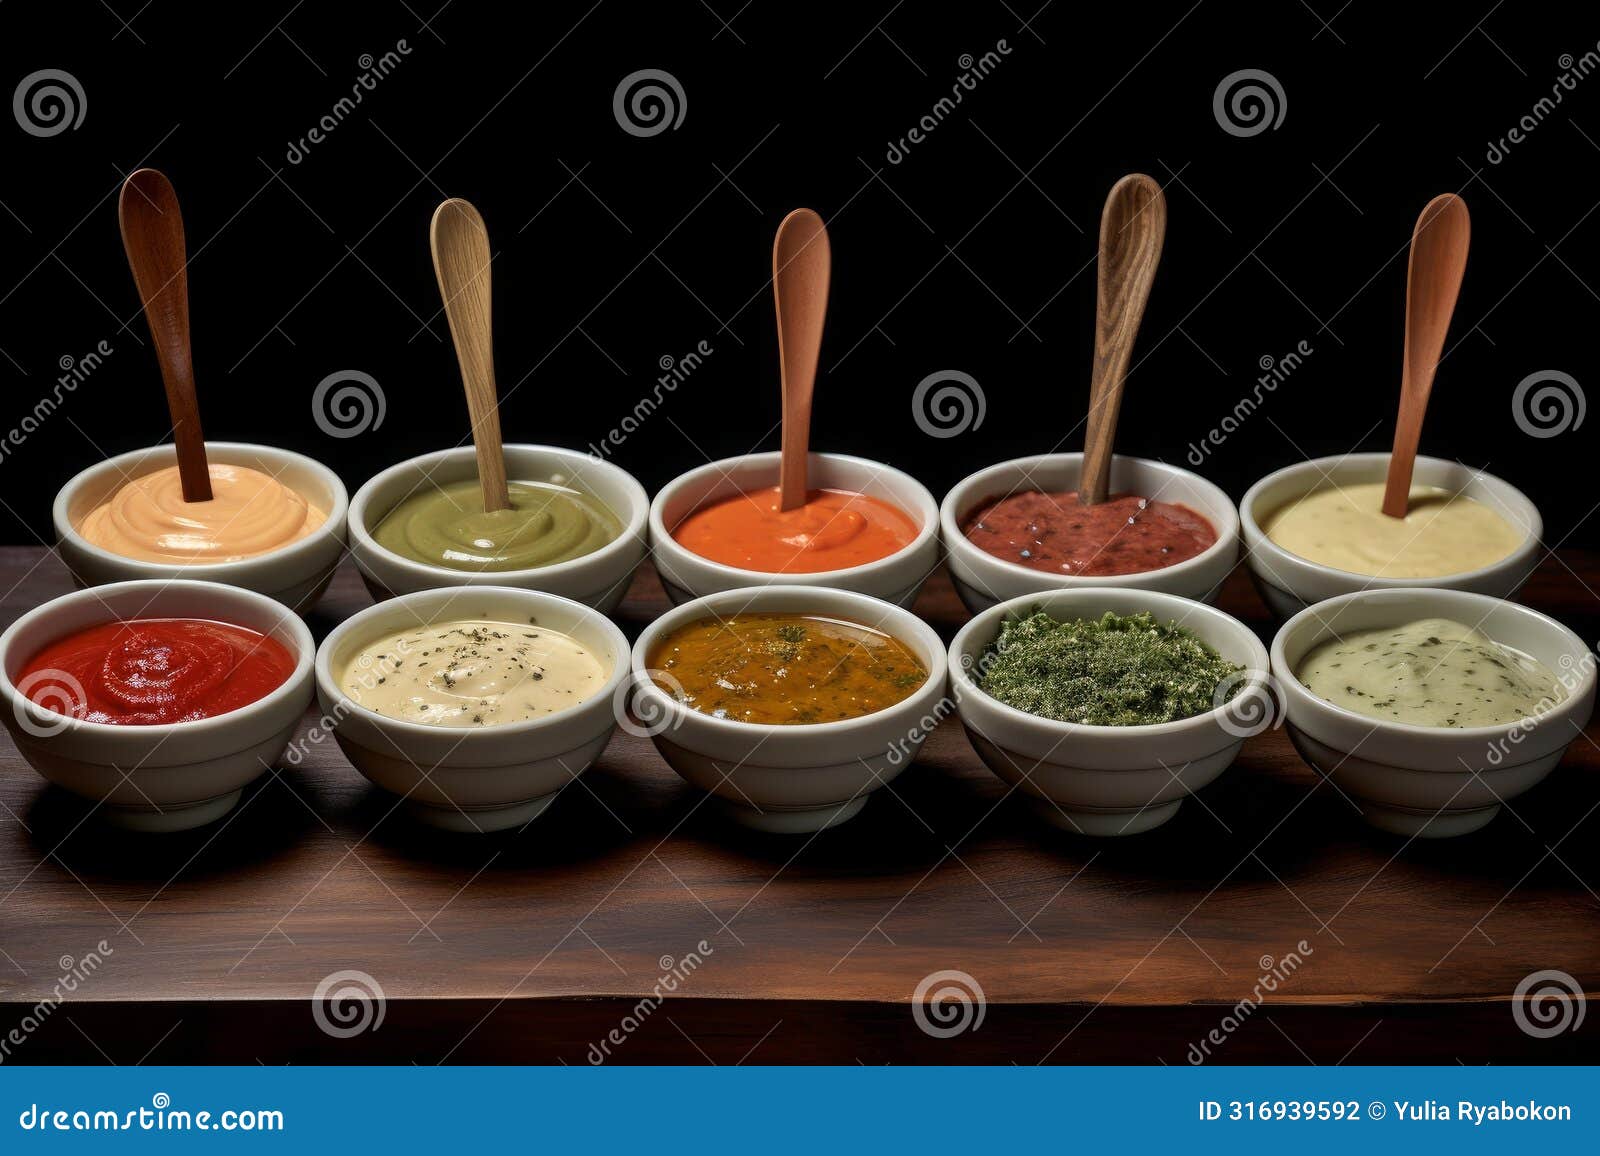 versatile sauces bowls different. generate ai